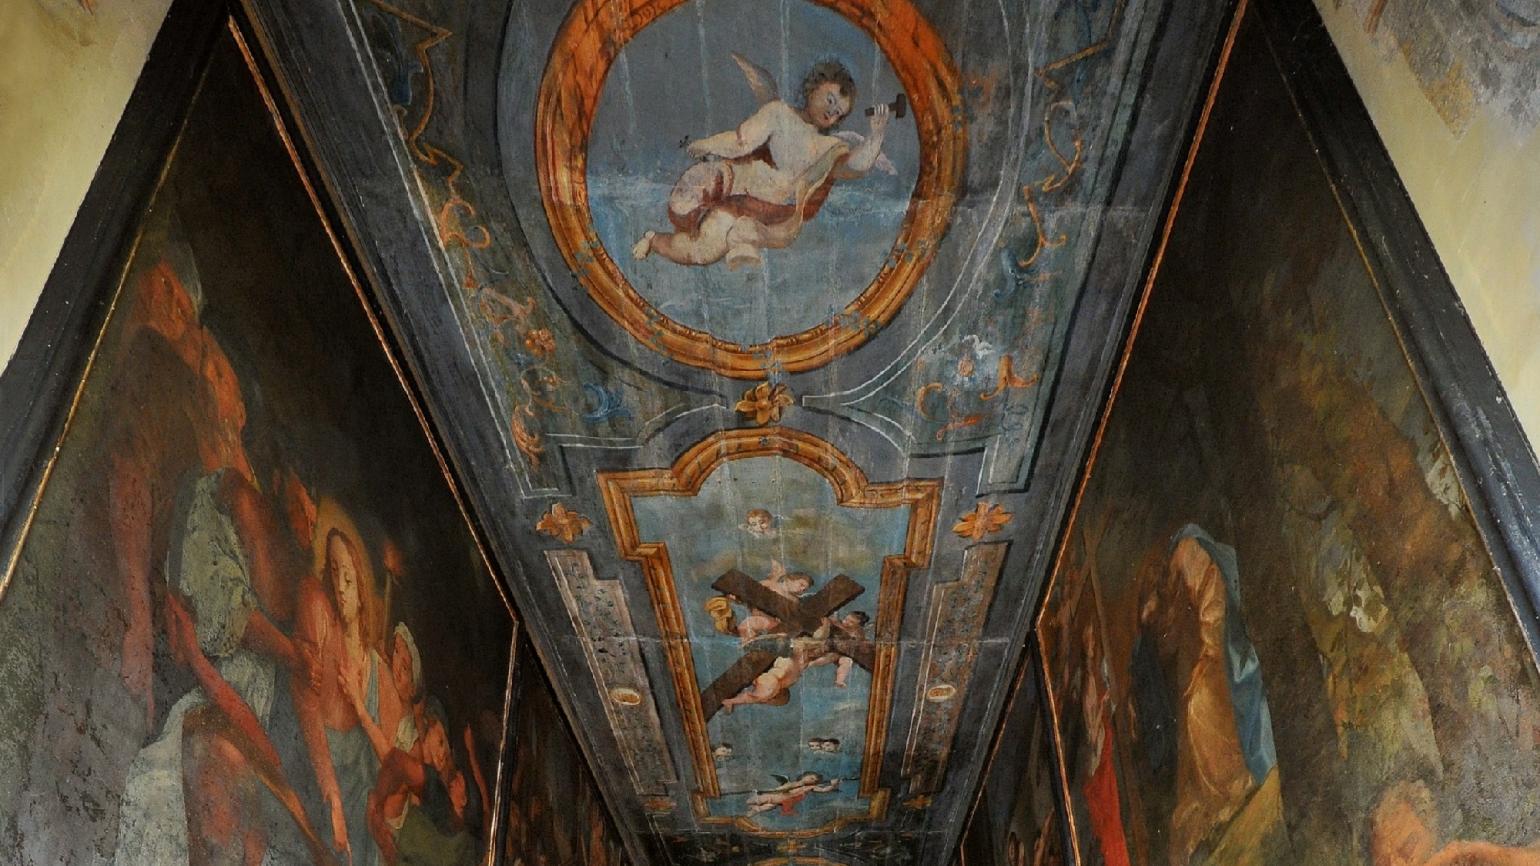 Campli (Te), Santuario della Scala Santa, particolare del soffitto - Archivio Regione Abruzzo, autore Adriani